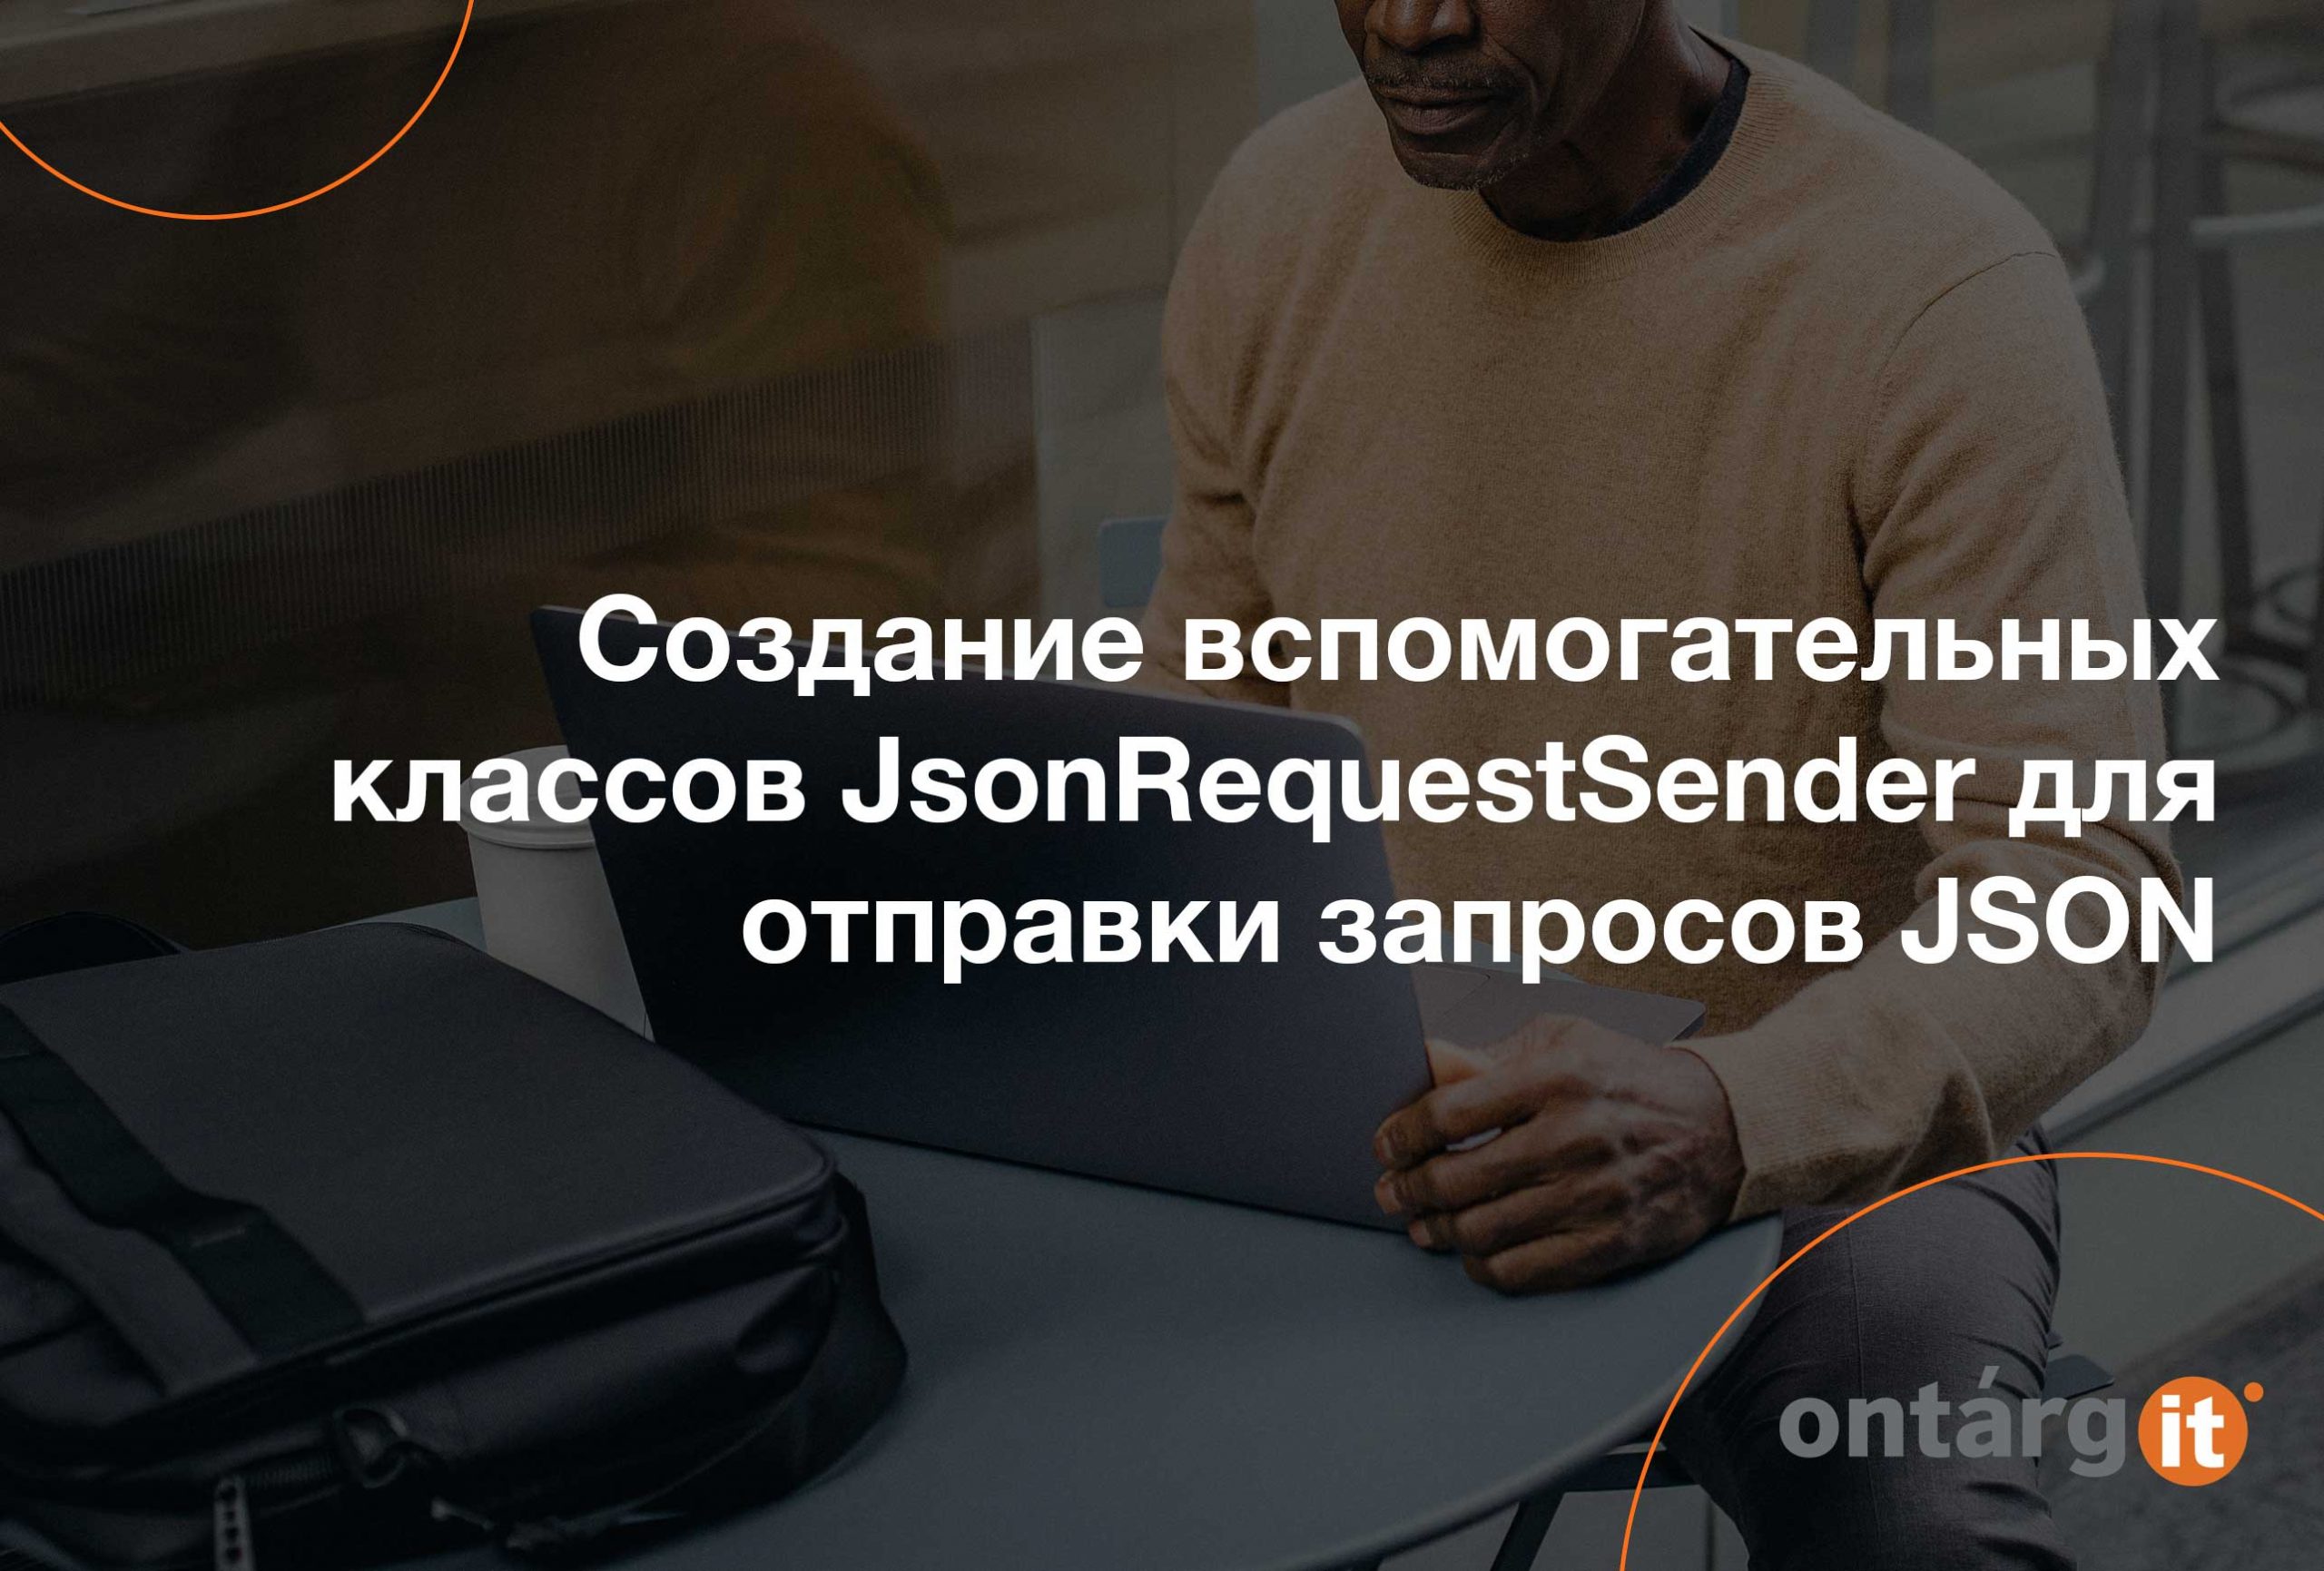 Создание-вспомогательных-классов-JsonRequestSender-для-отправки-запросов-JSON